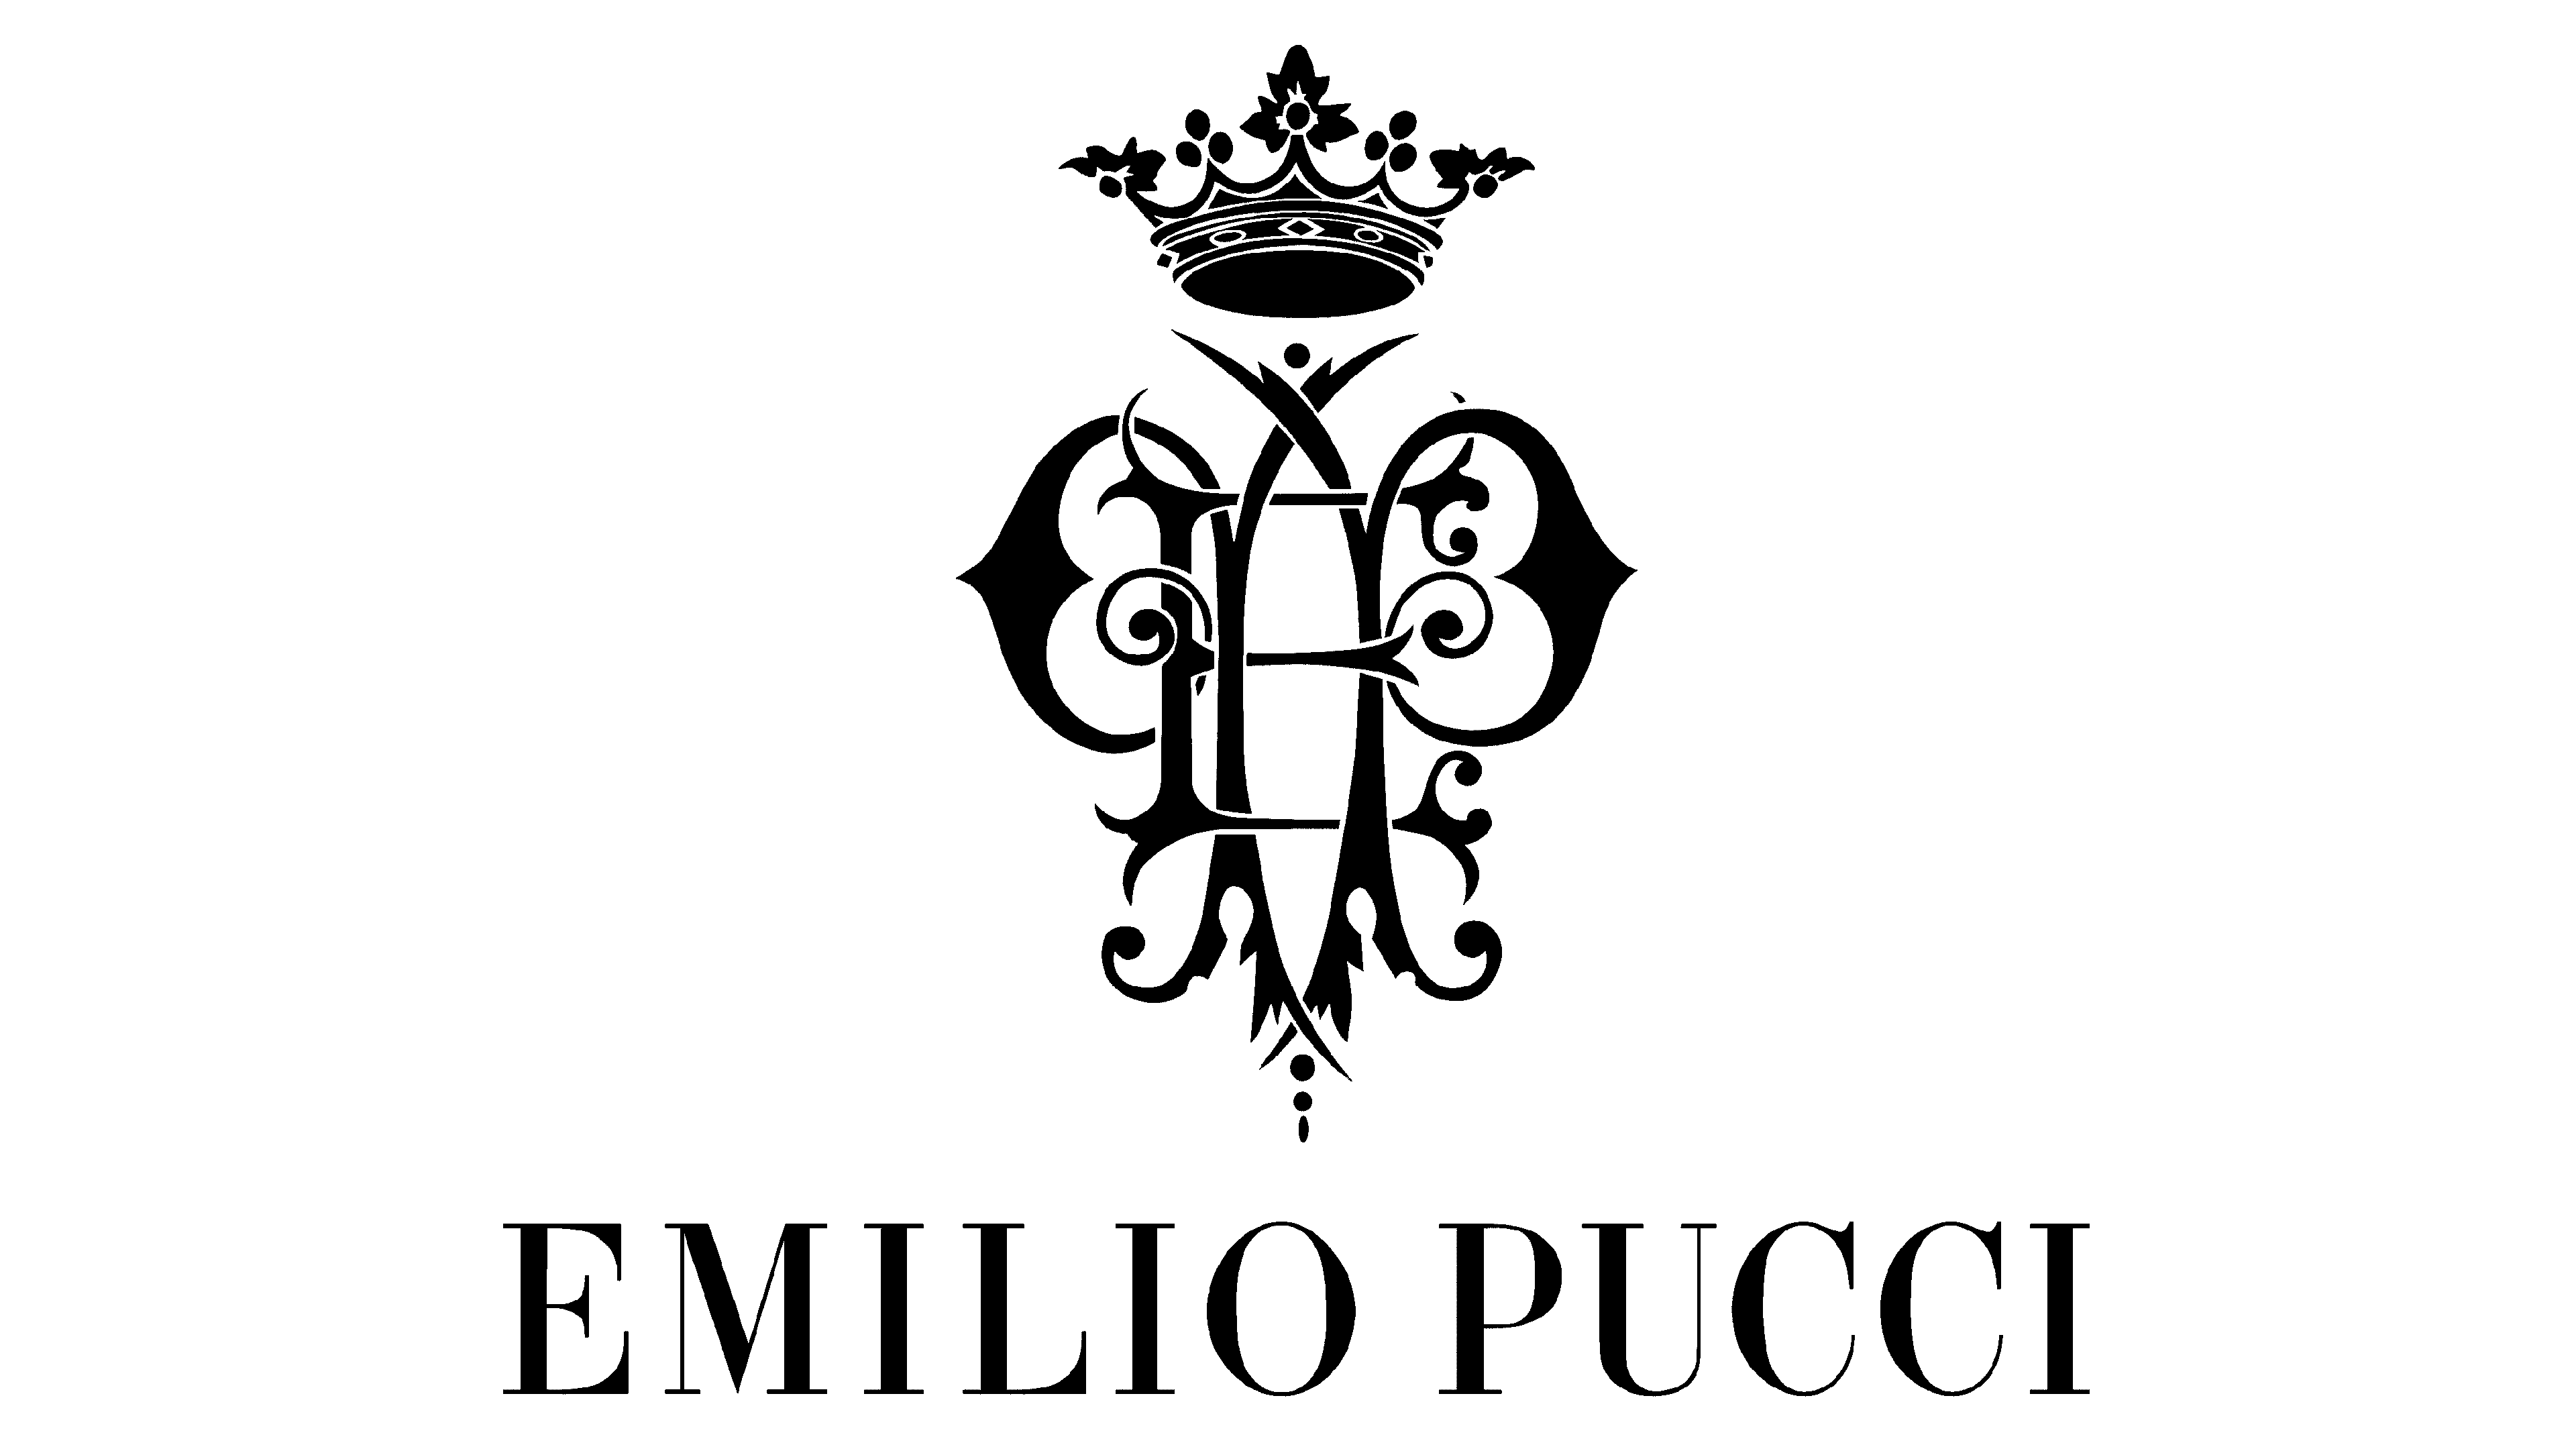 Emilio pucci, Art logo, Graphic design typography